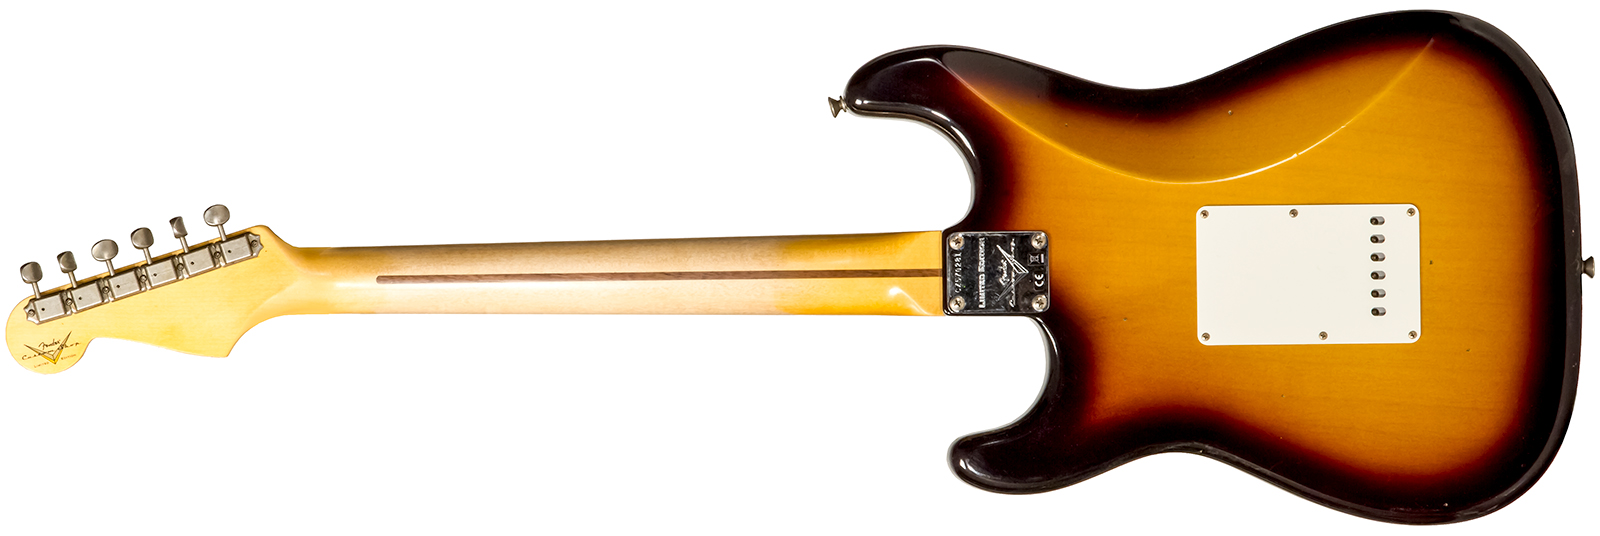 Fender Custom Shop Strat 1956 3s Trem Mn #cz570281 - Journeyman Relic Aged 2-color Sunburst - Str shape electric guitar - Variation 1